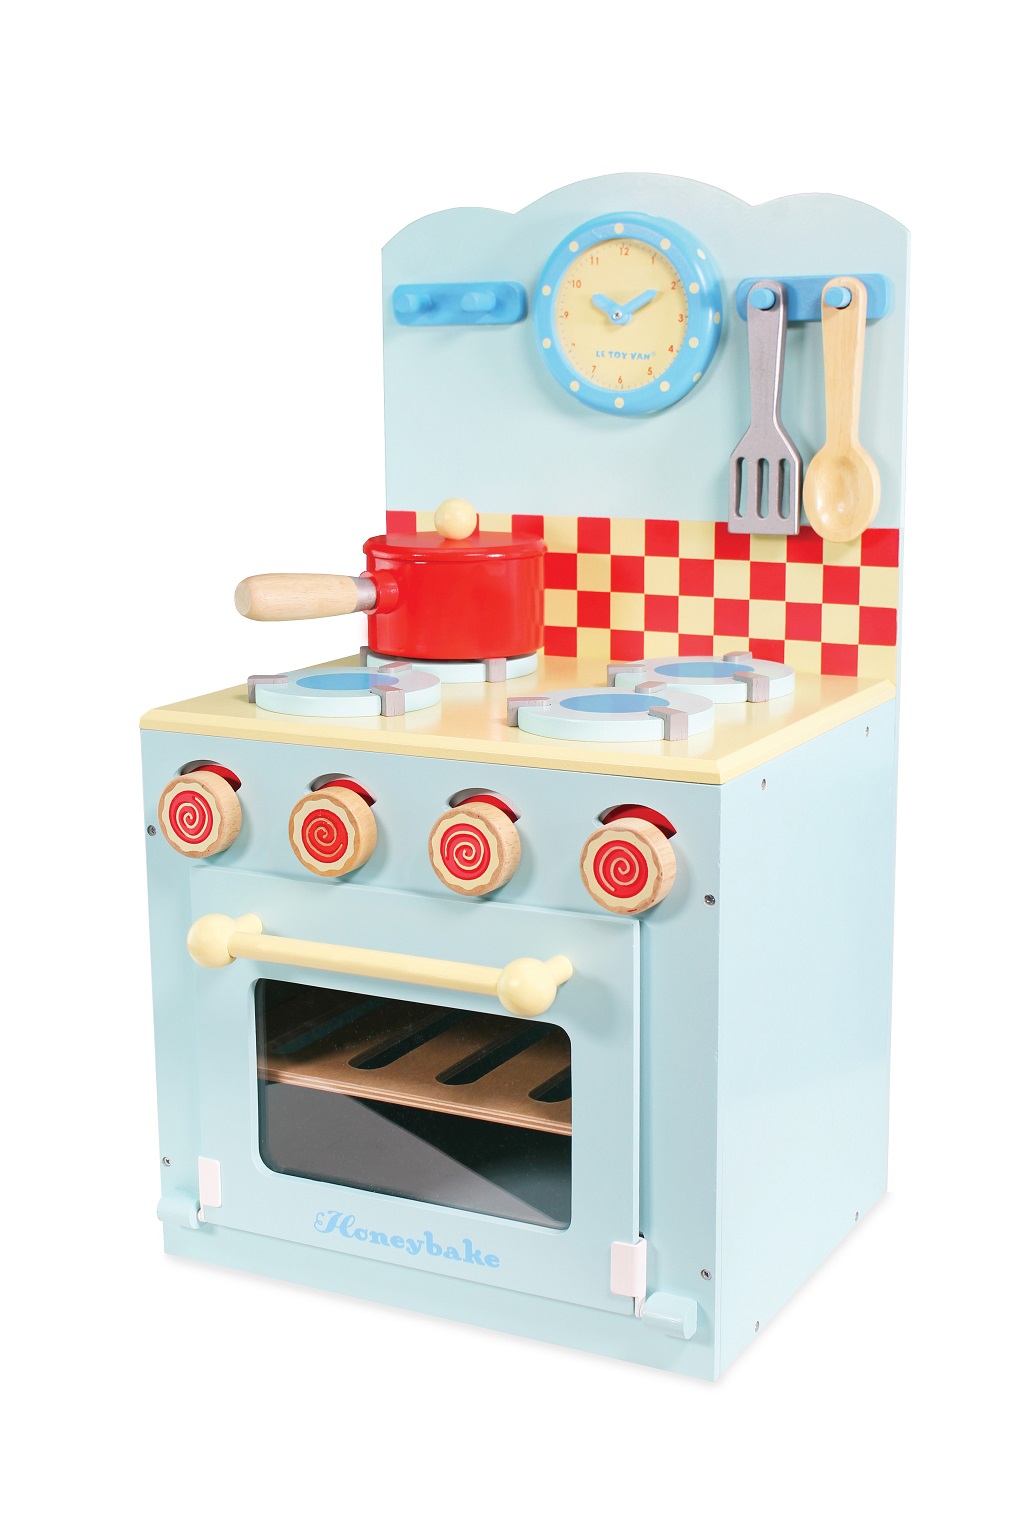 Le Toy Van Kuchyňka modrá Honeybake